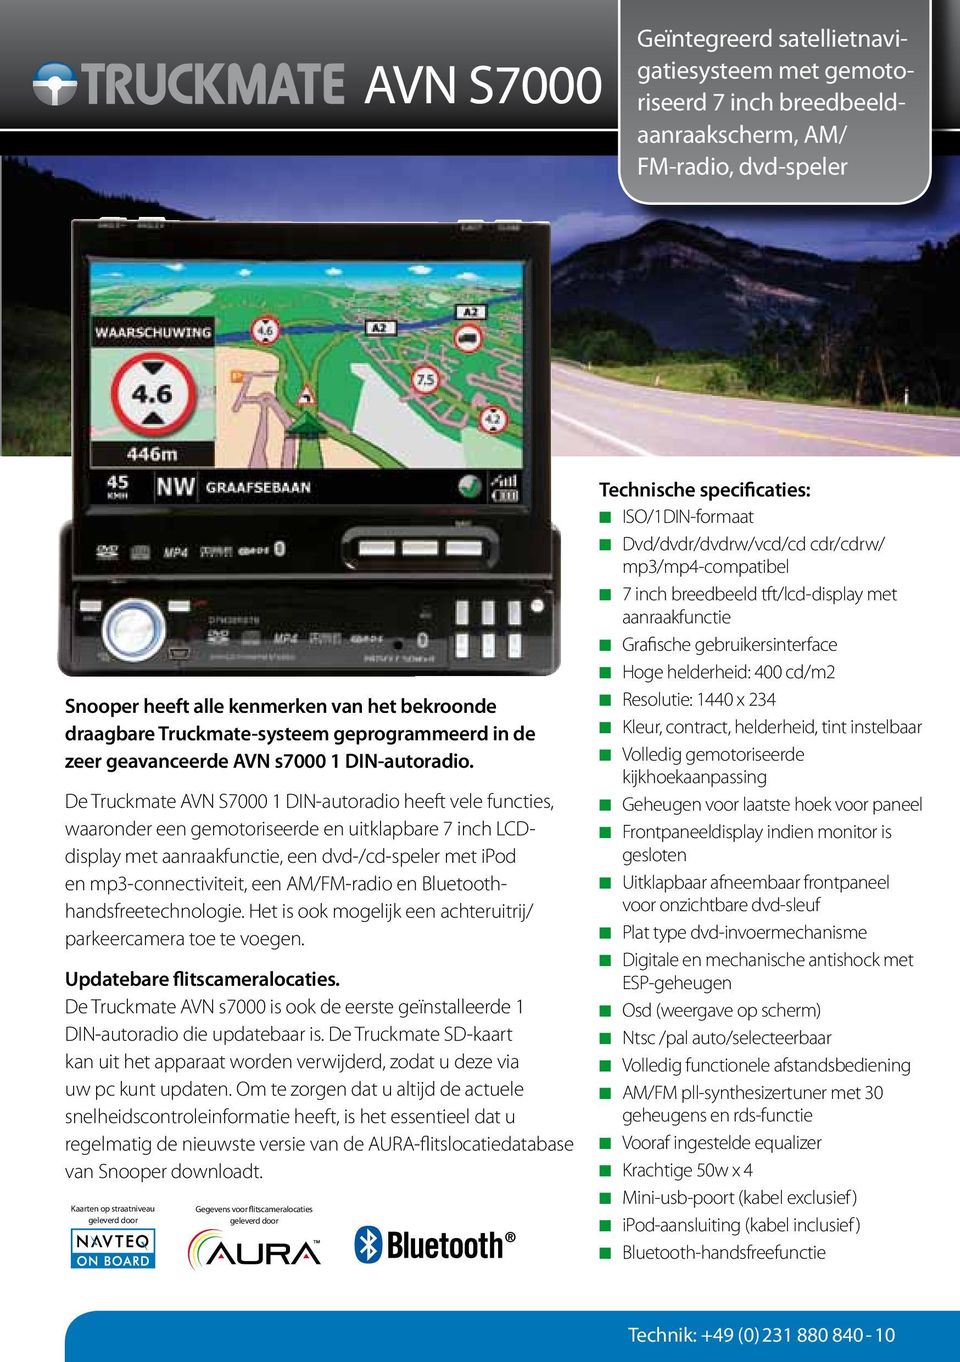 De Truckmate AVN S7000 1 DIN-autoradio heeft vele functies, waaronder een gemotoriseerde en uitklapbare 7 inch LCDdisplay met aanraakfunctie, een dvd-/cd-speler met ipod en mp3-connectiviteit, een